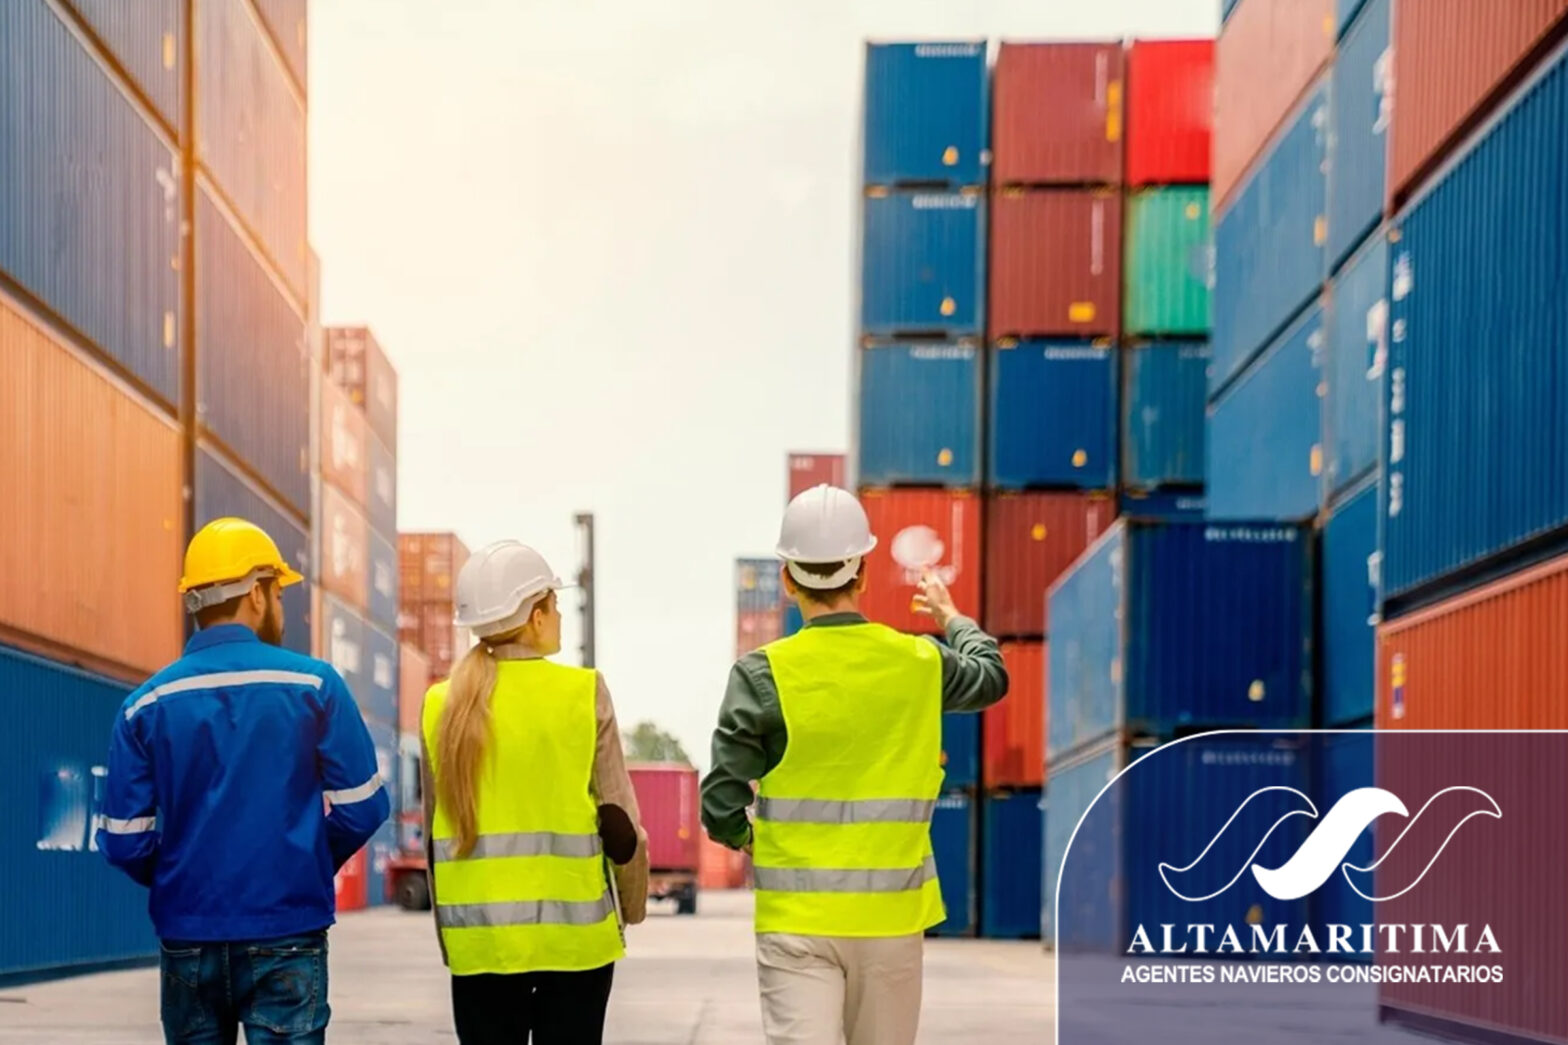 Despacho aduanero de contenedores: funcionamiento e importancia